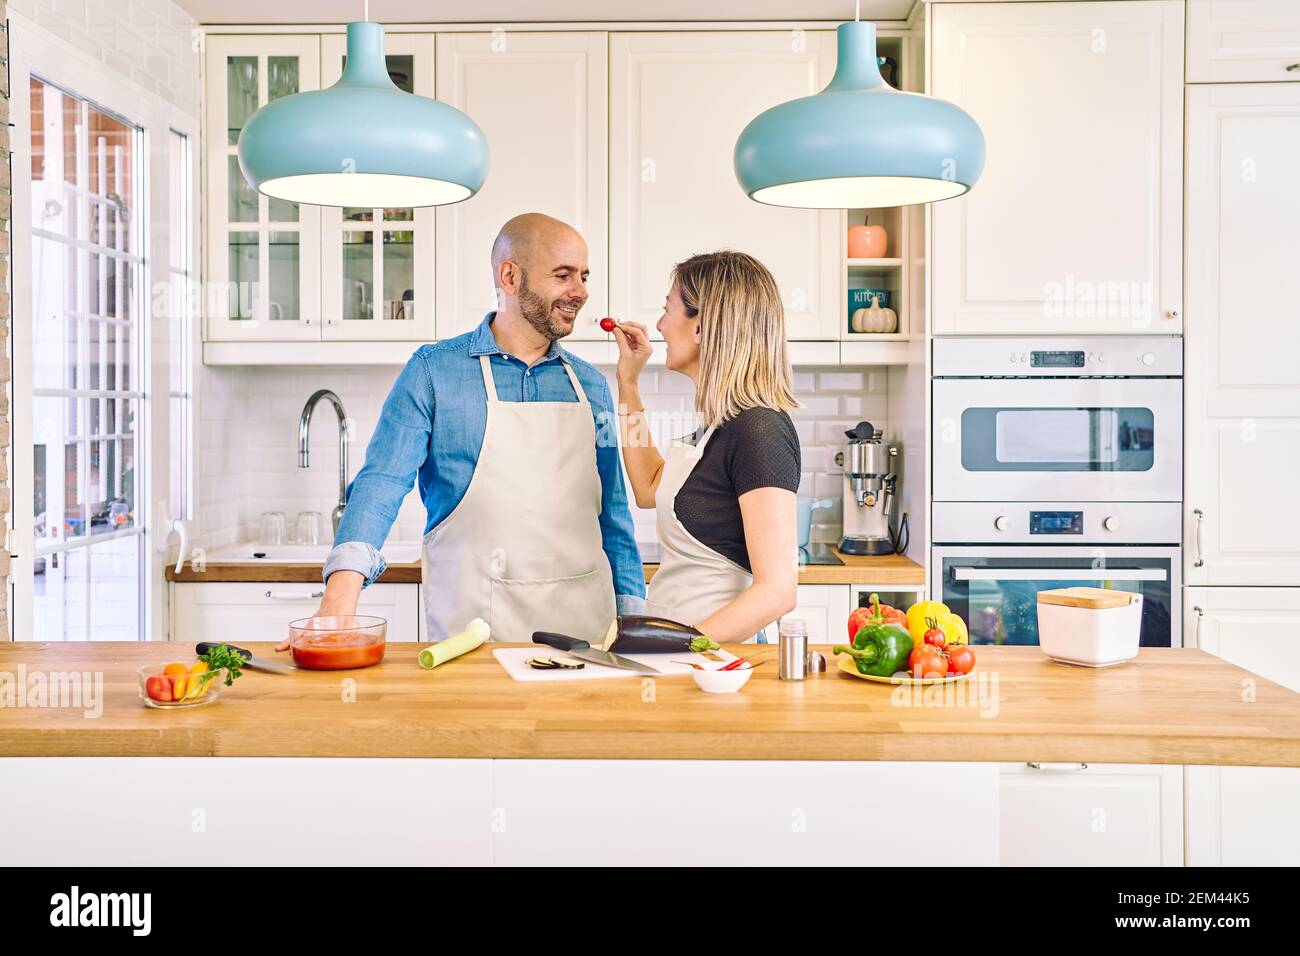 Una giovane coppia felice sta gustando e preparando un pasto sano nella loro cucina. Gli offre un pomodoro. Foto Stock